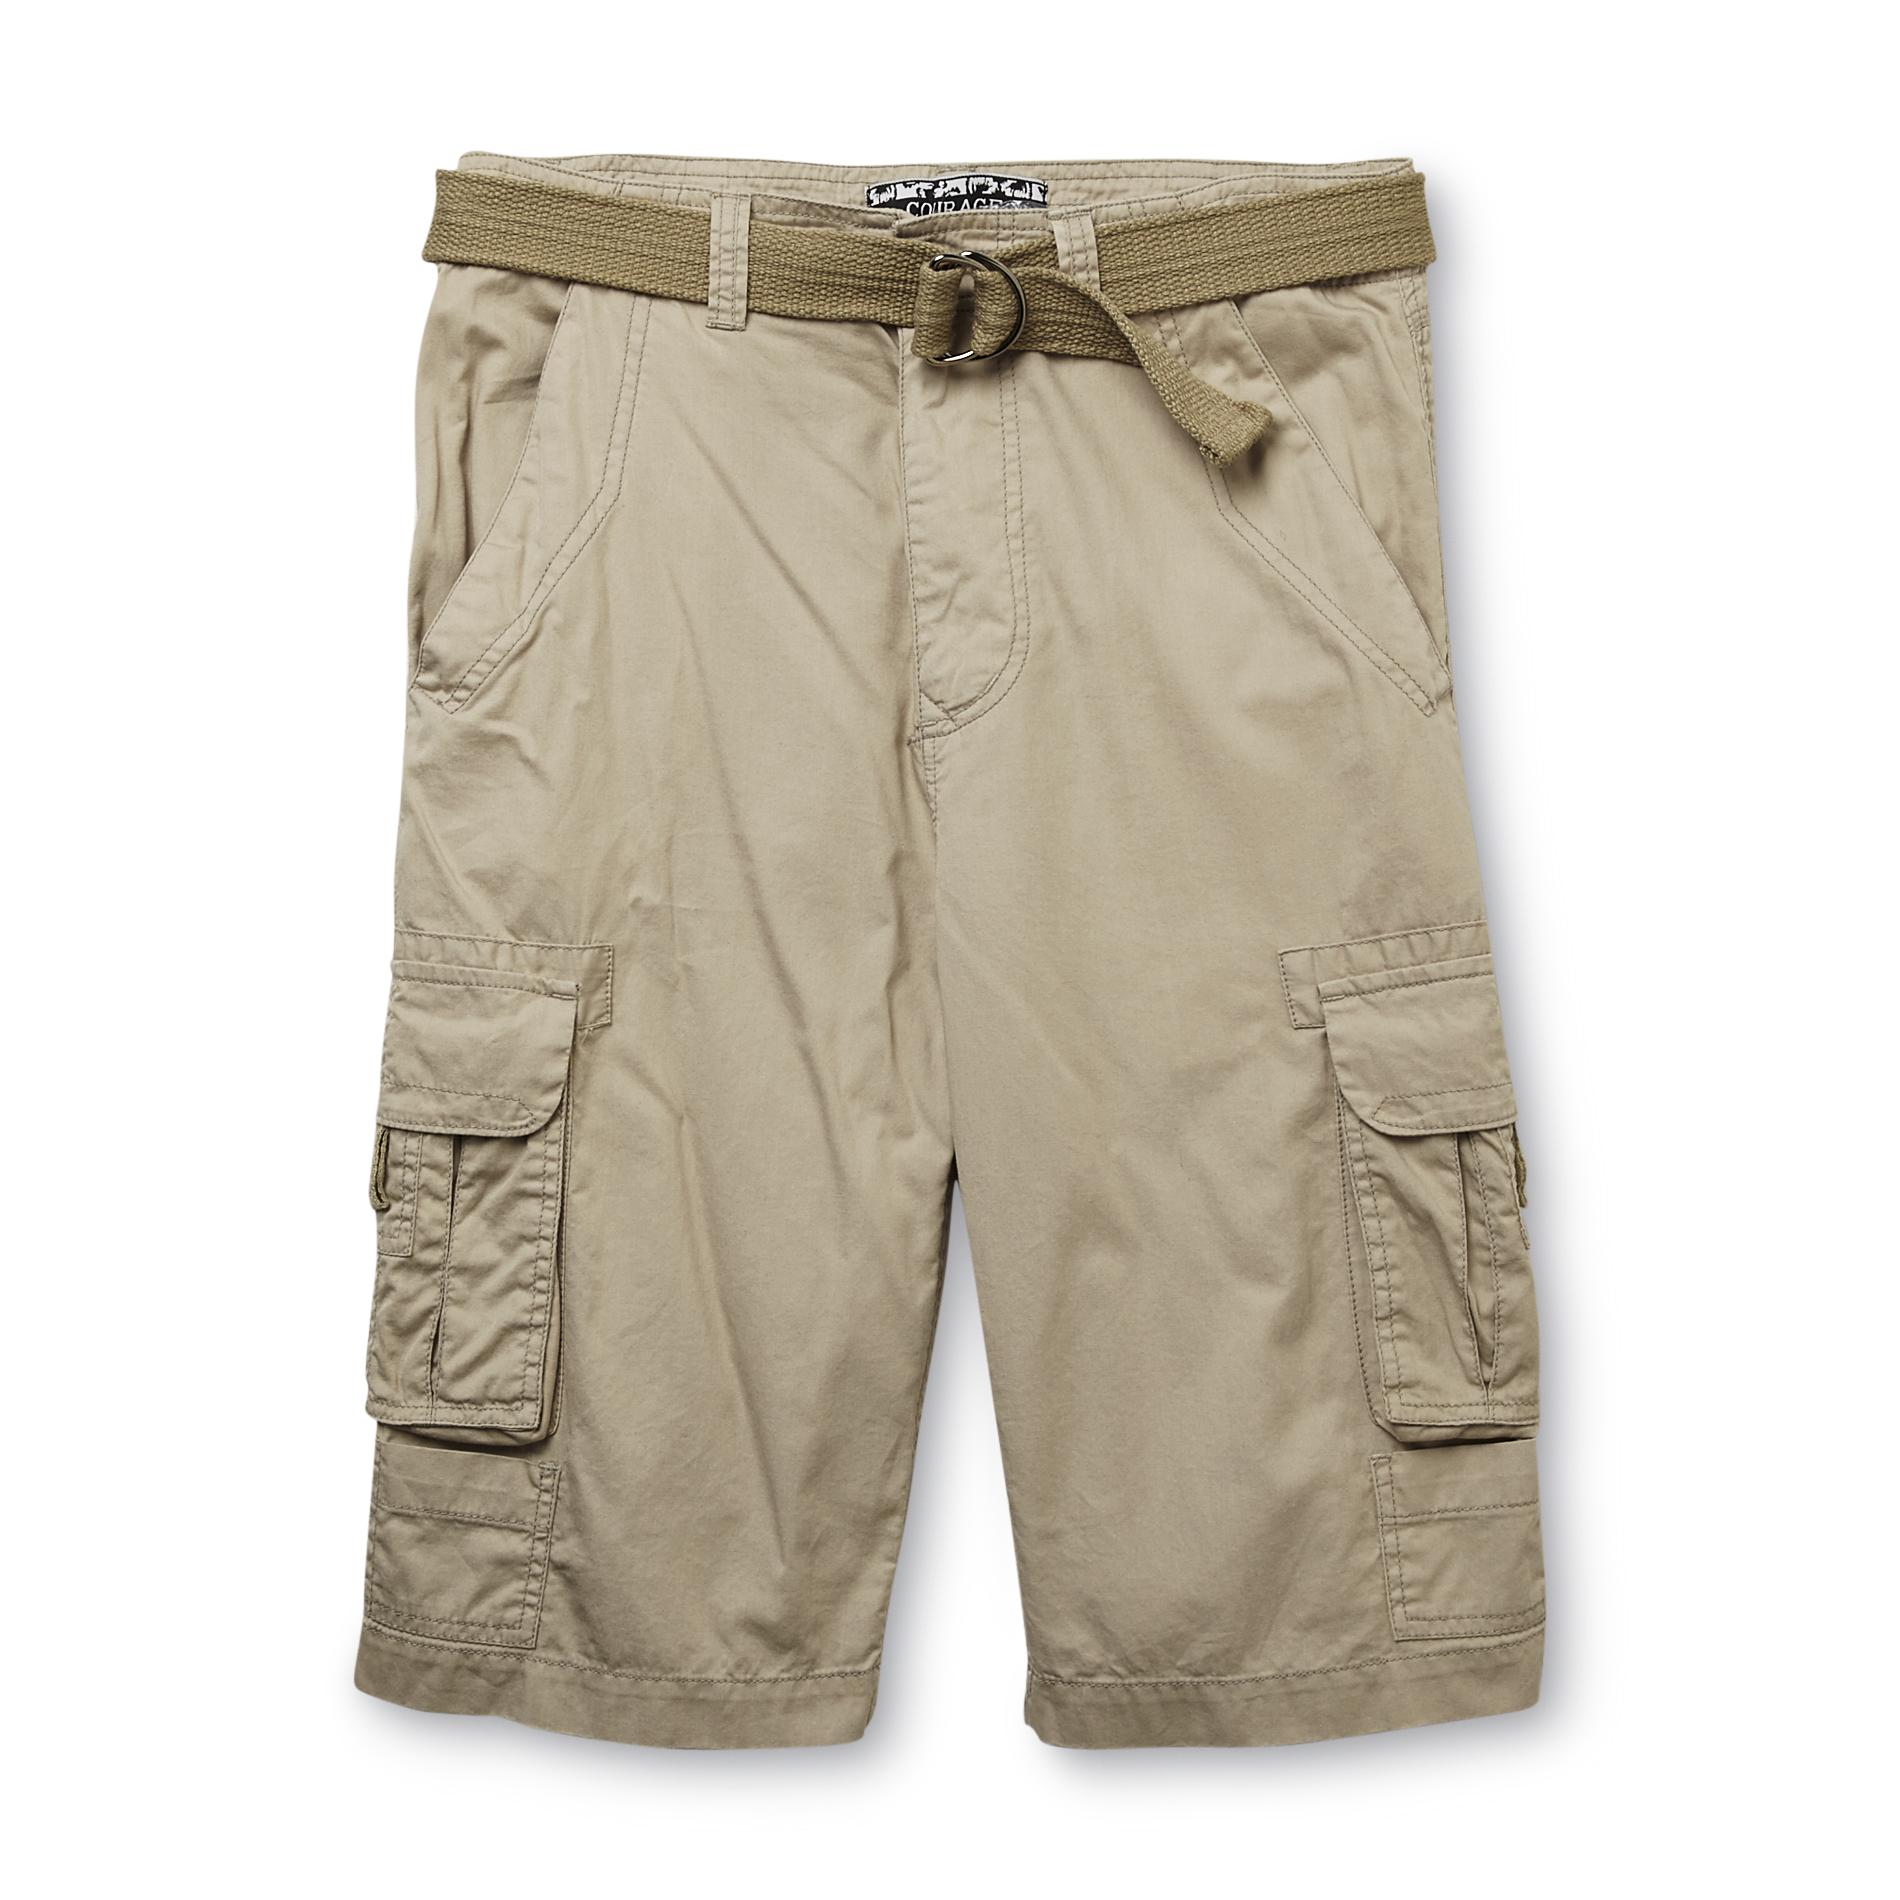 Men's Cargo Shorts & Belt